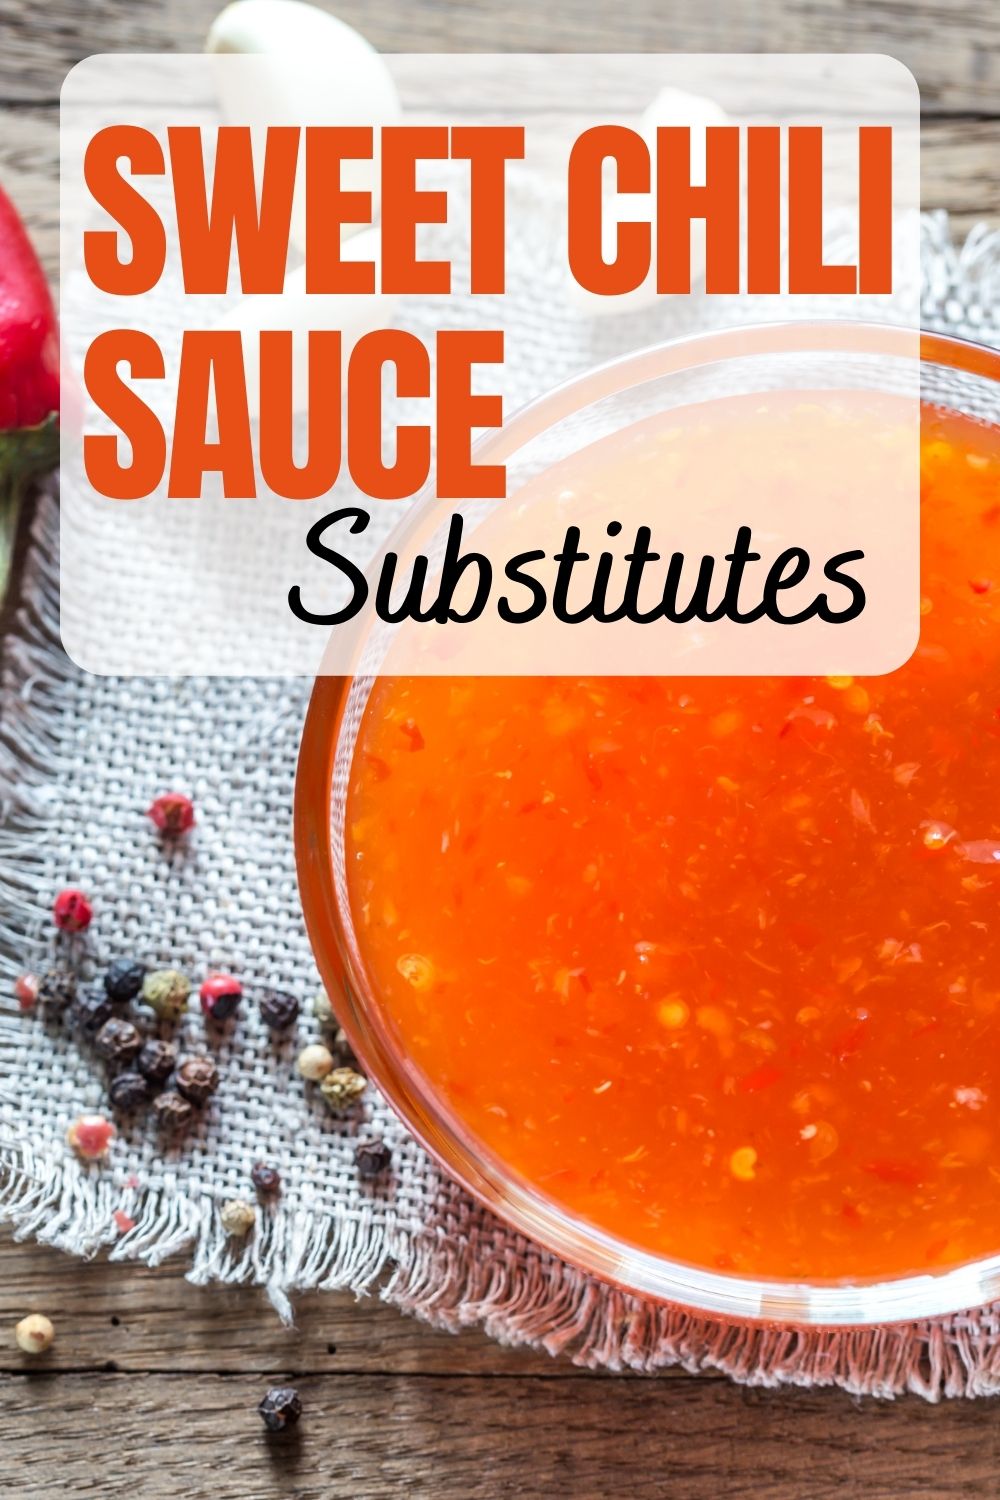 9 meilleurs substituts à la sauce chili douce + recette DIY